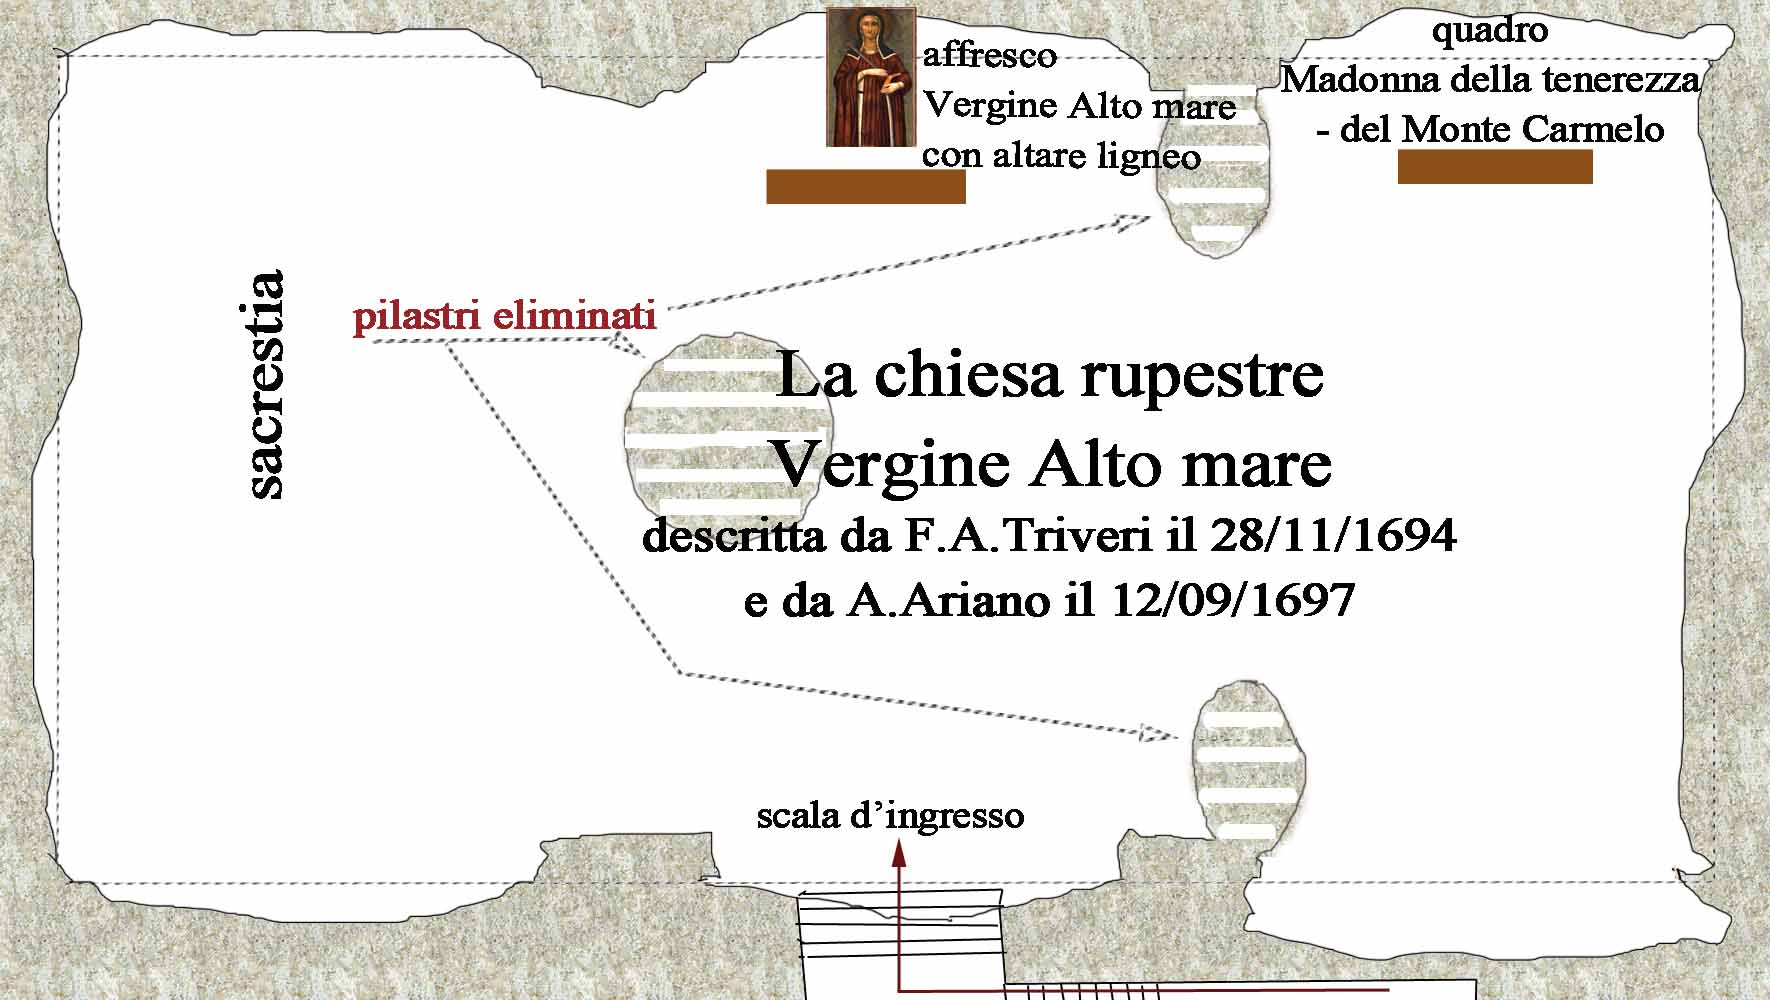 pianta schematica della cripta dell'Alto mare nel 1694